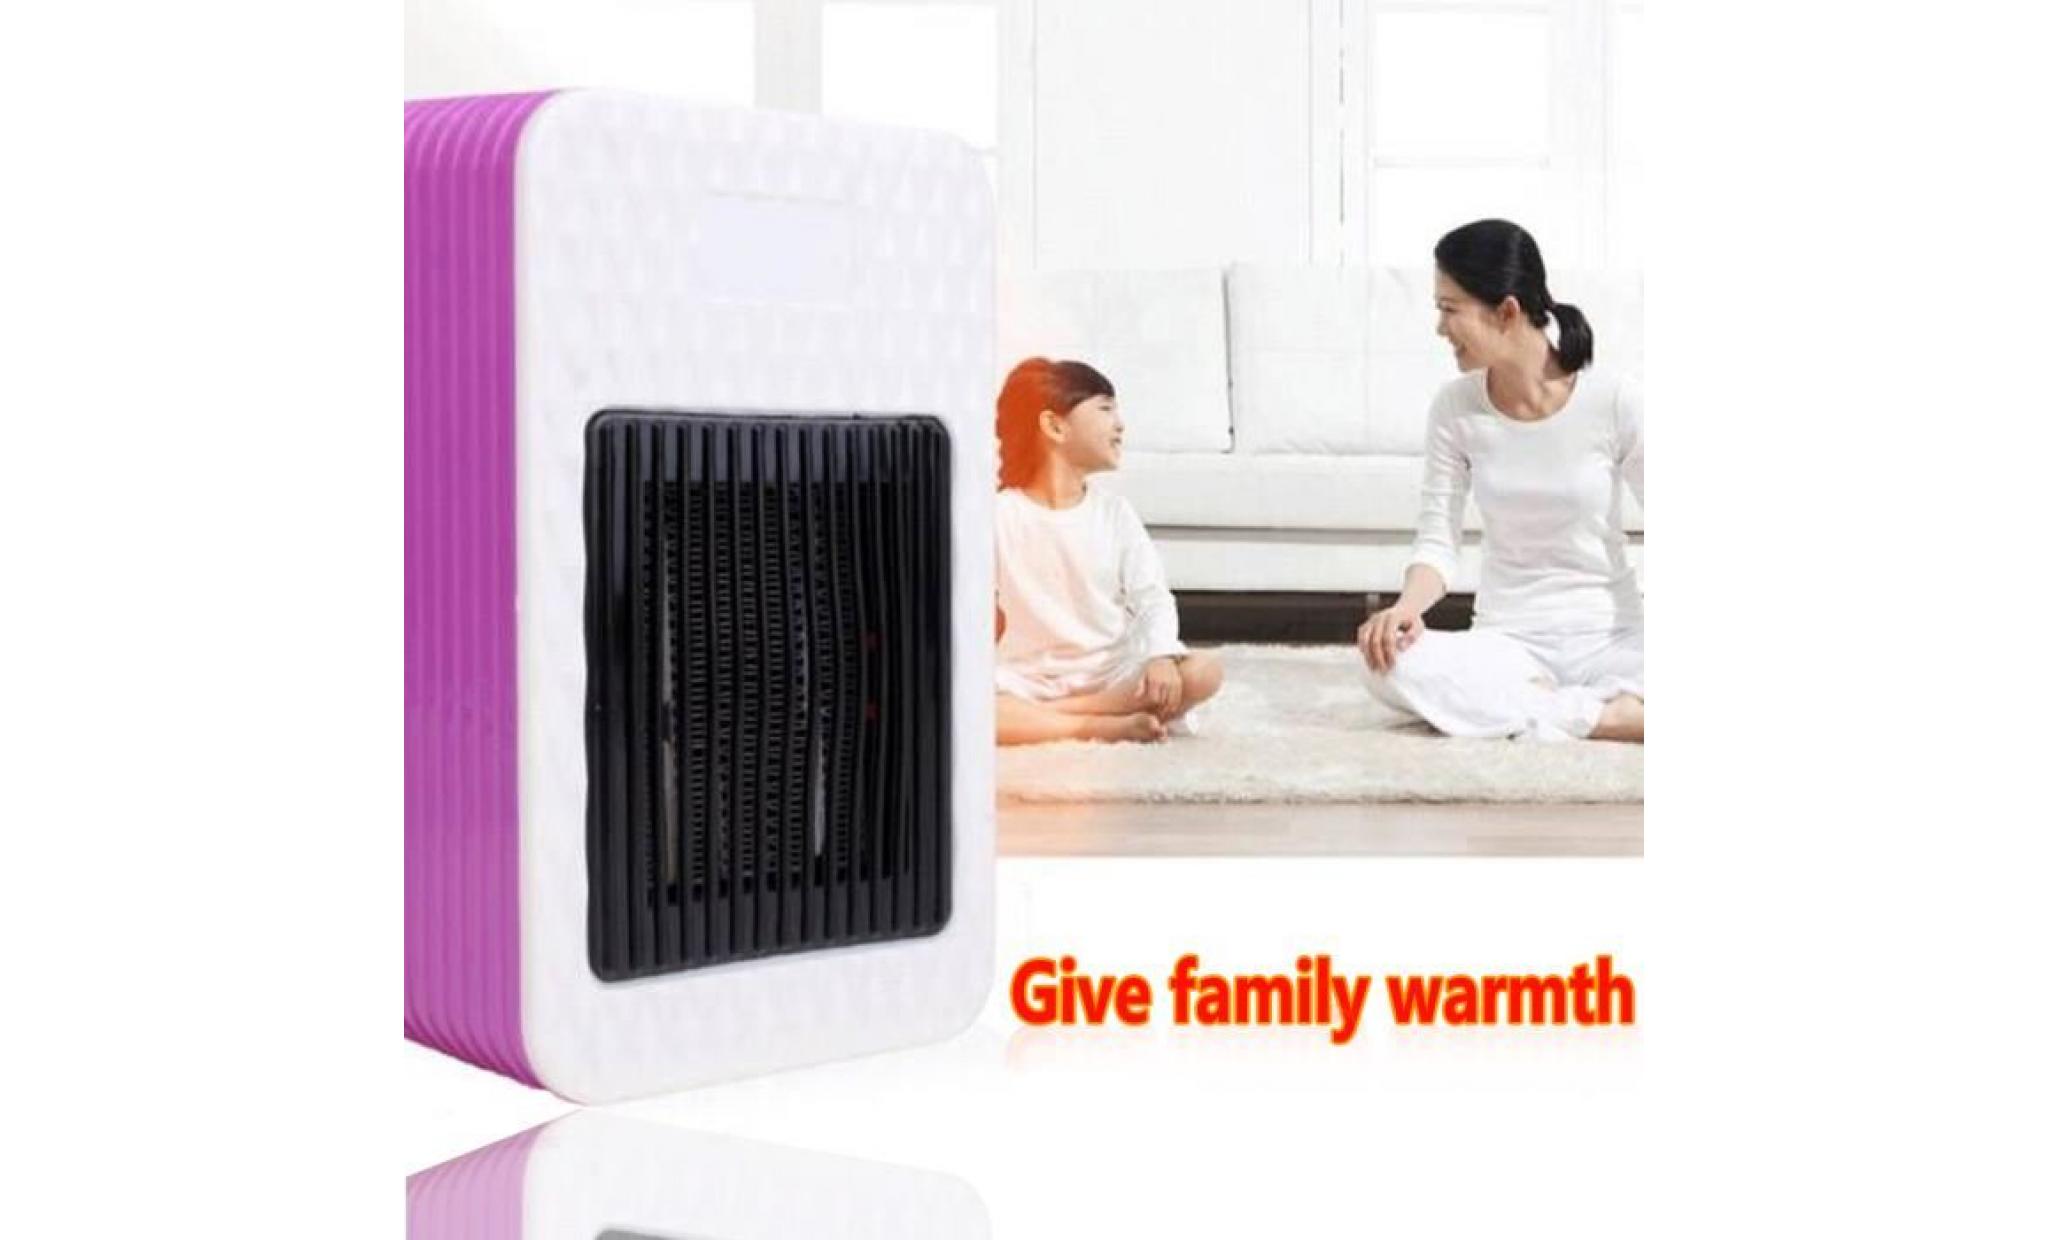 neufu 500w mini portable electric électriques chauffage à air chaud réchauffeur eu plug pour bureau domestique